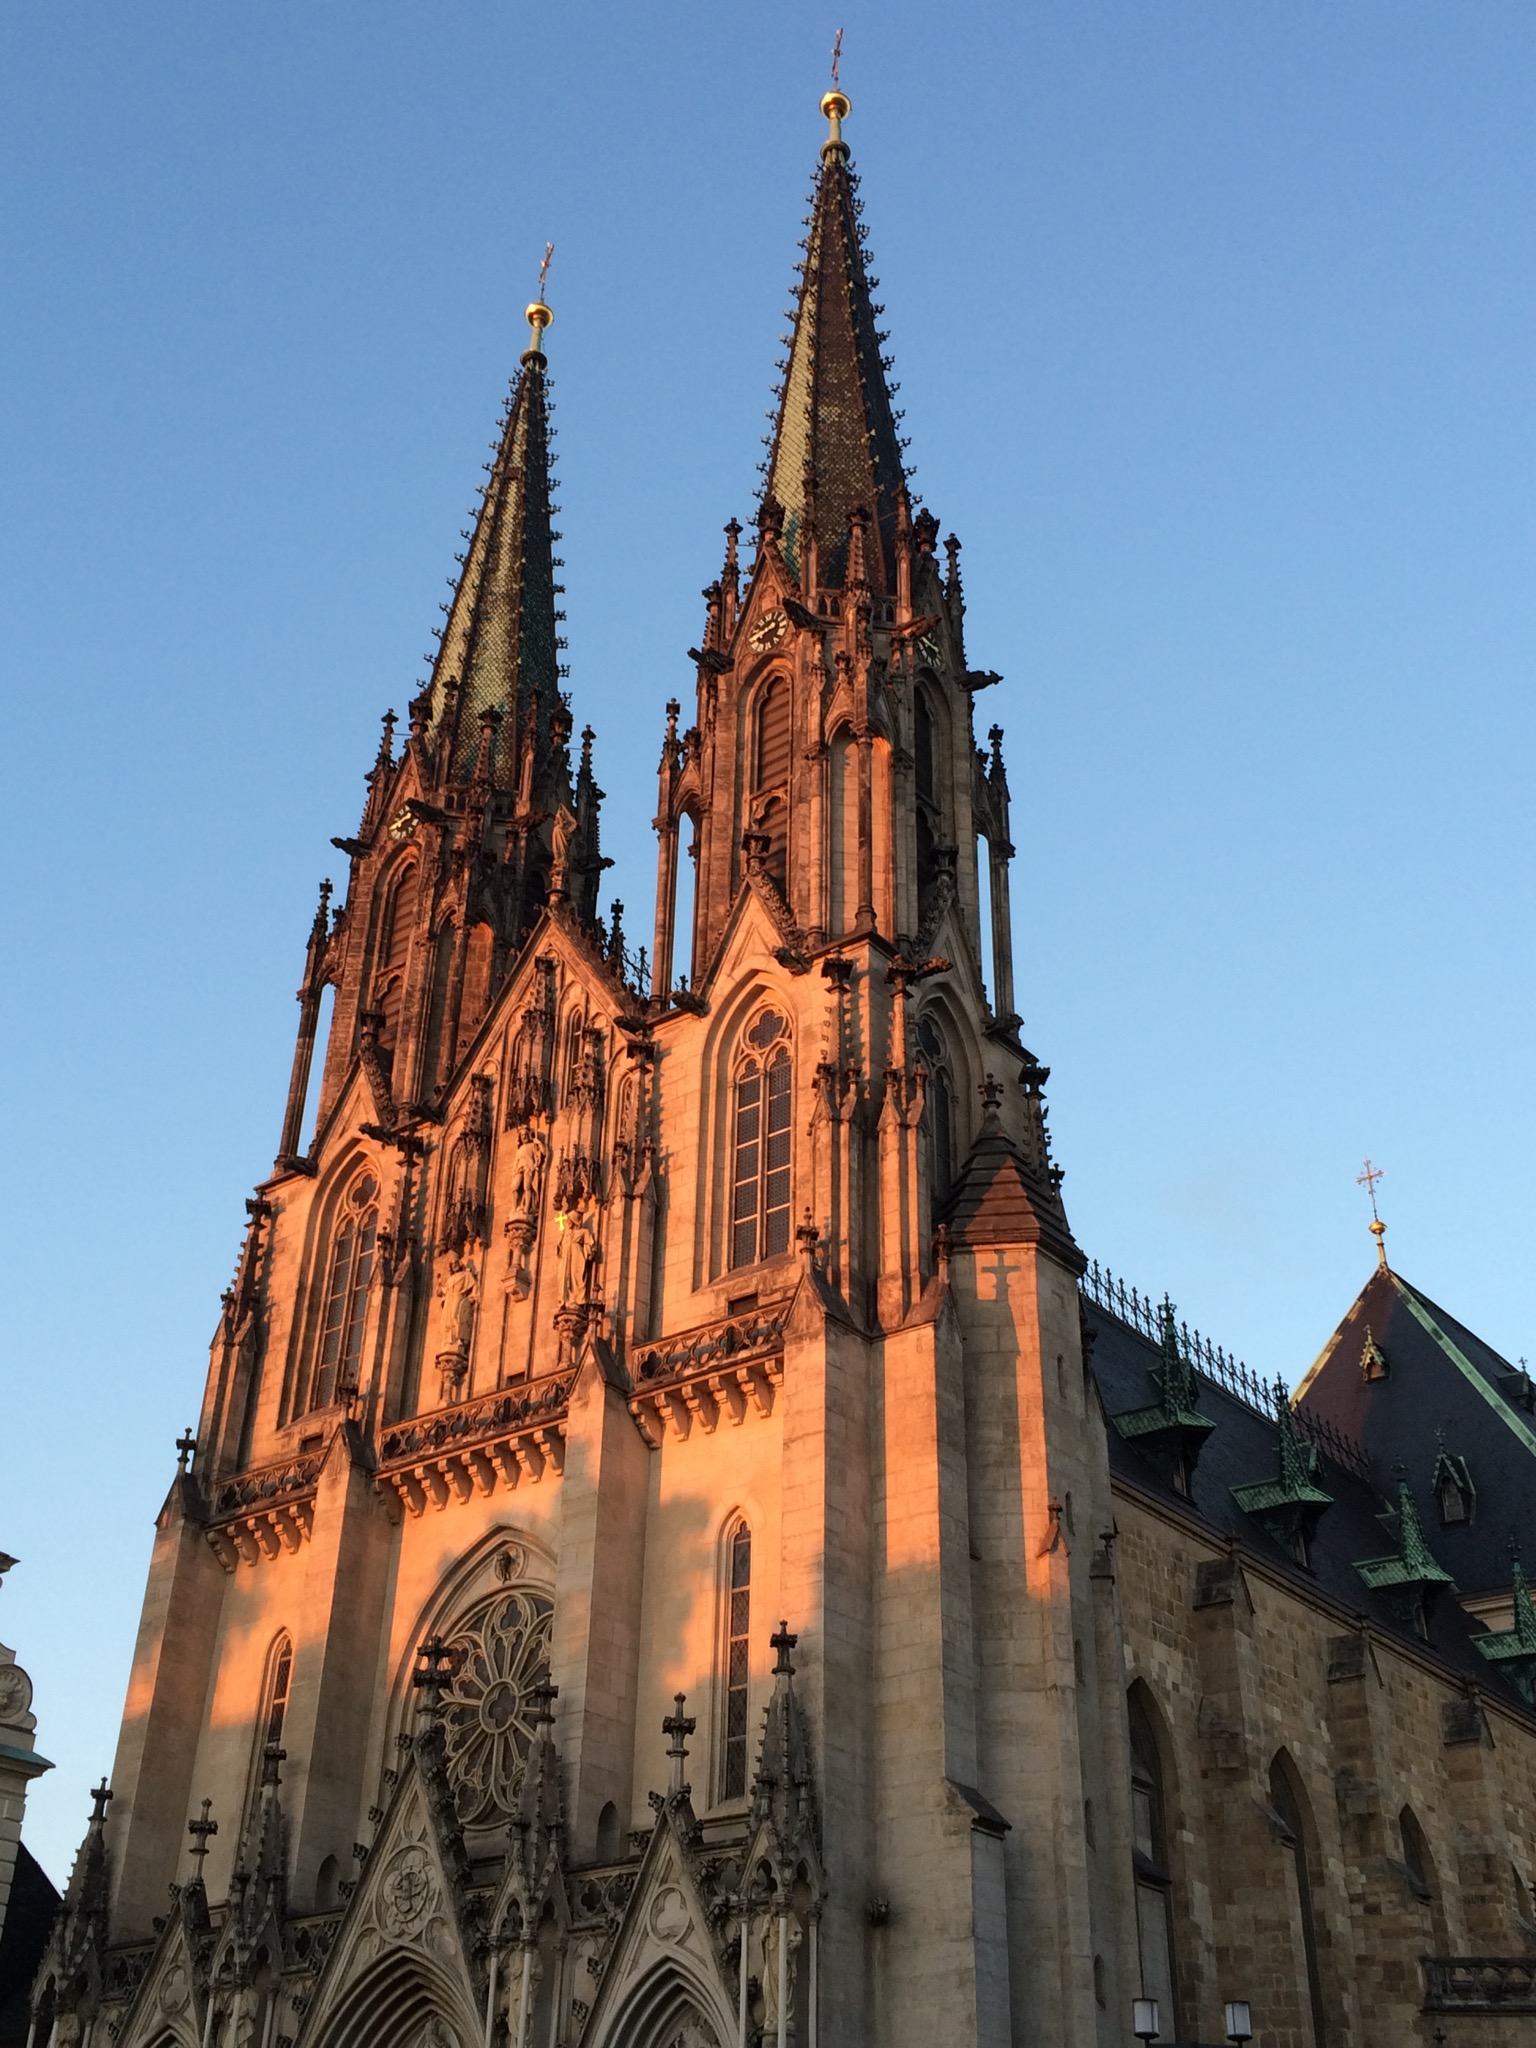 St Wenceslas' Cathedral, Olomouc, Czech Republic